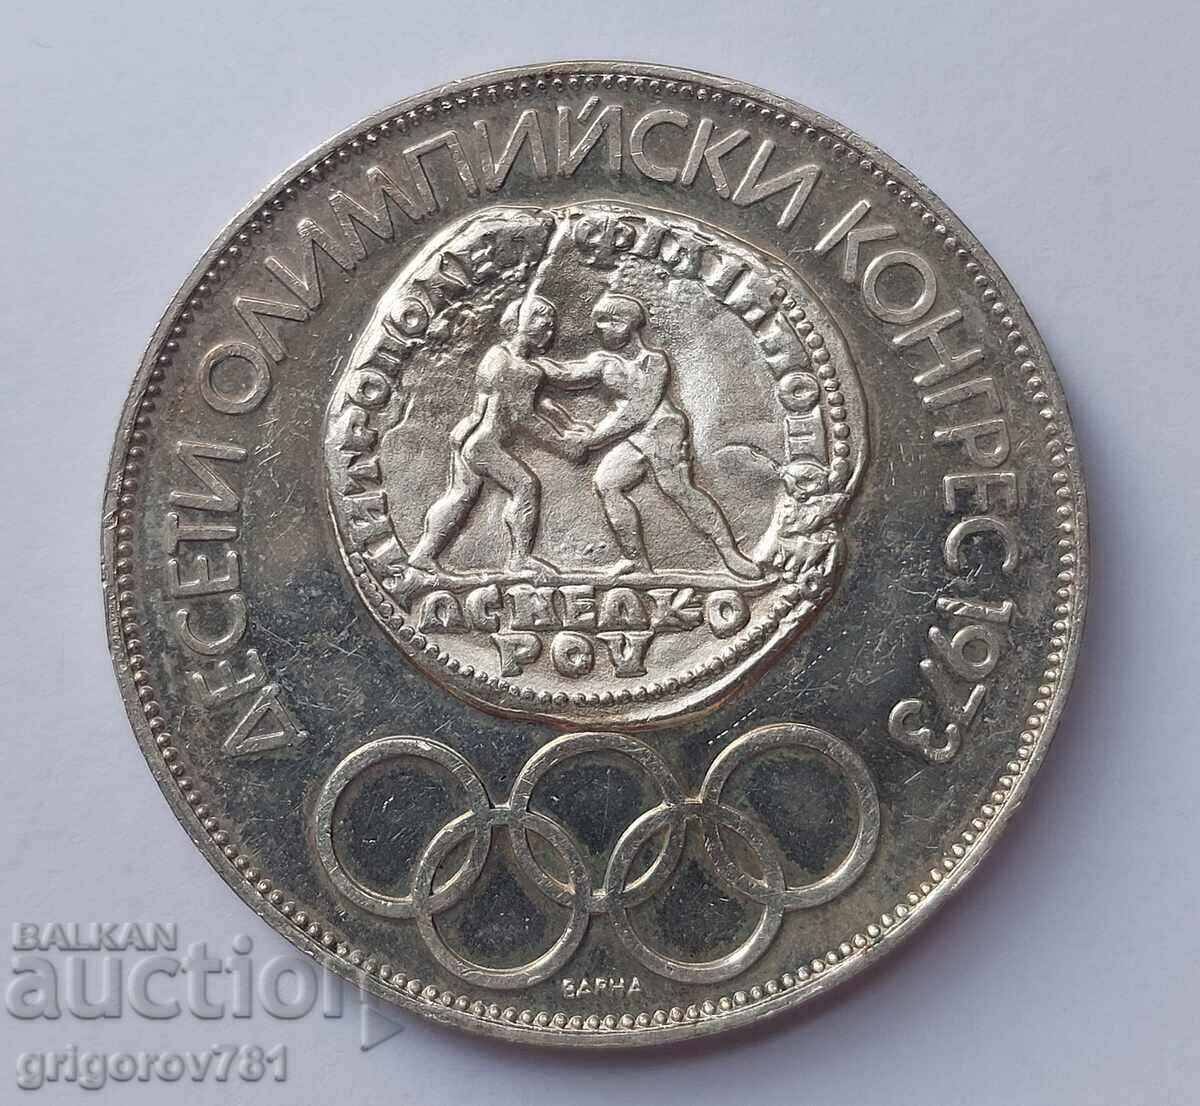 10 λέβα ασήμι 1975 Ολυμπιακό Συνέδριο - Κυριλλικό